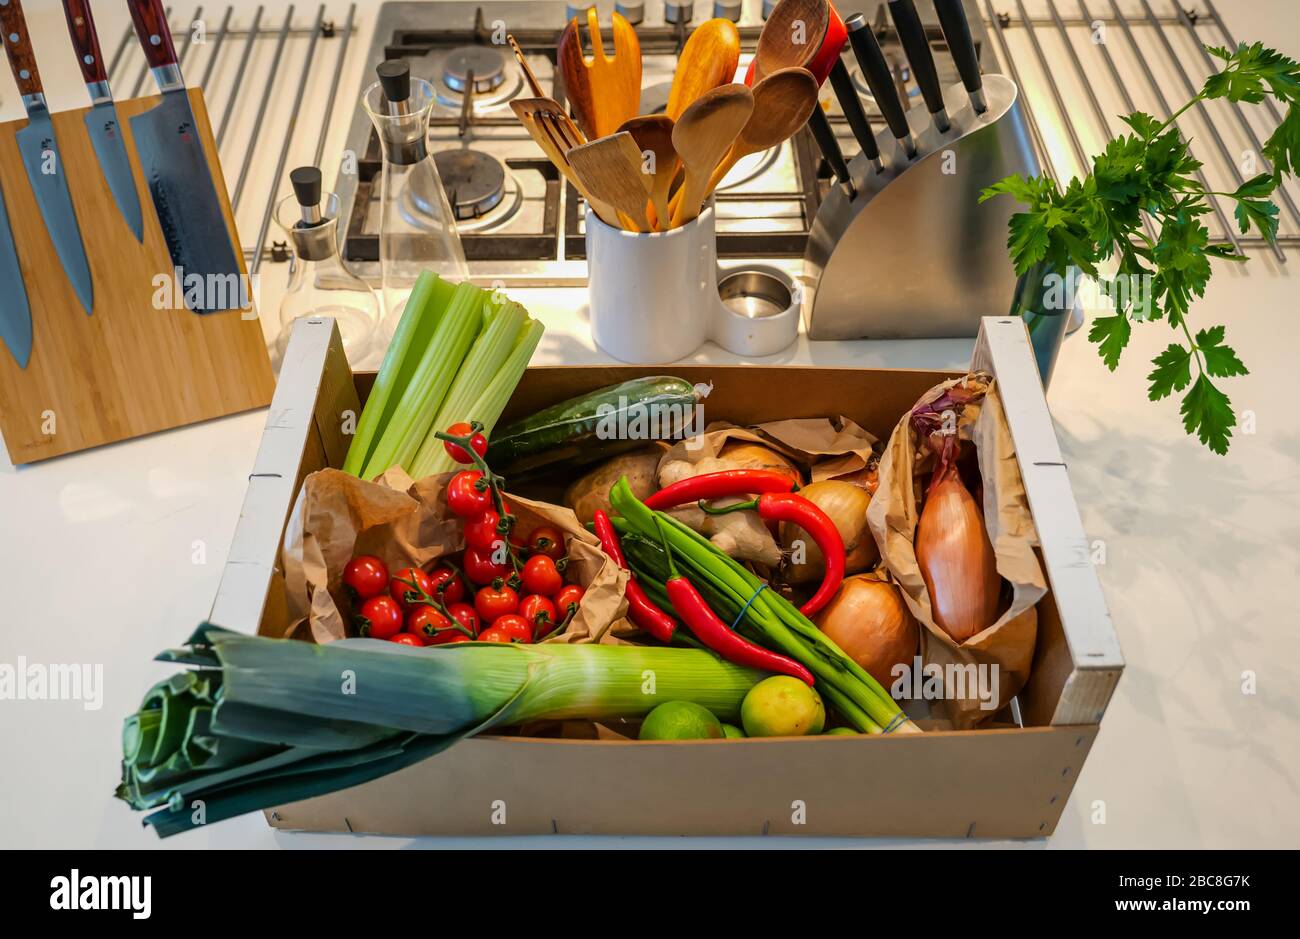 Consegna locale a domicilio di verdure fresche in cucina: Sedano, pomodori ciliegini, porri, cipolle, patate, peperoncini rossi, cipollotti e limes Foto Stock